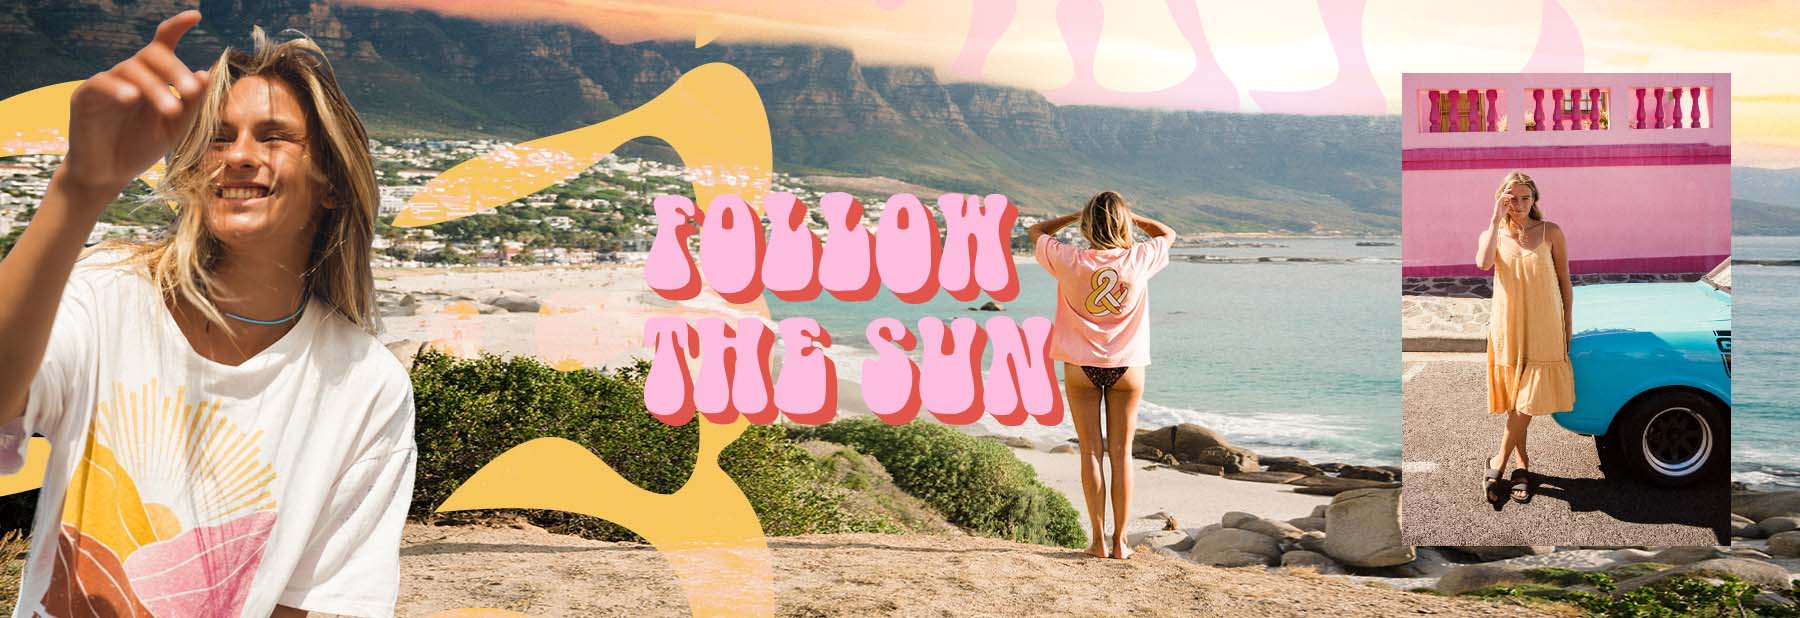 Follow the sun is het thema van deze dames die op het strand lopen met t-shirts met vrolijke grote print.